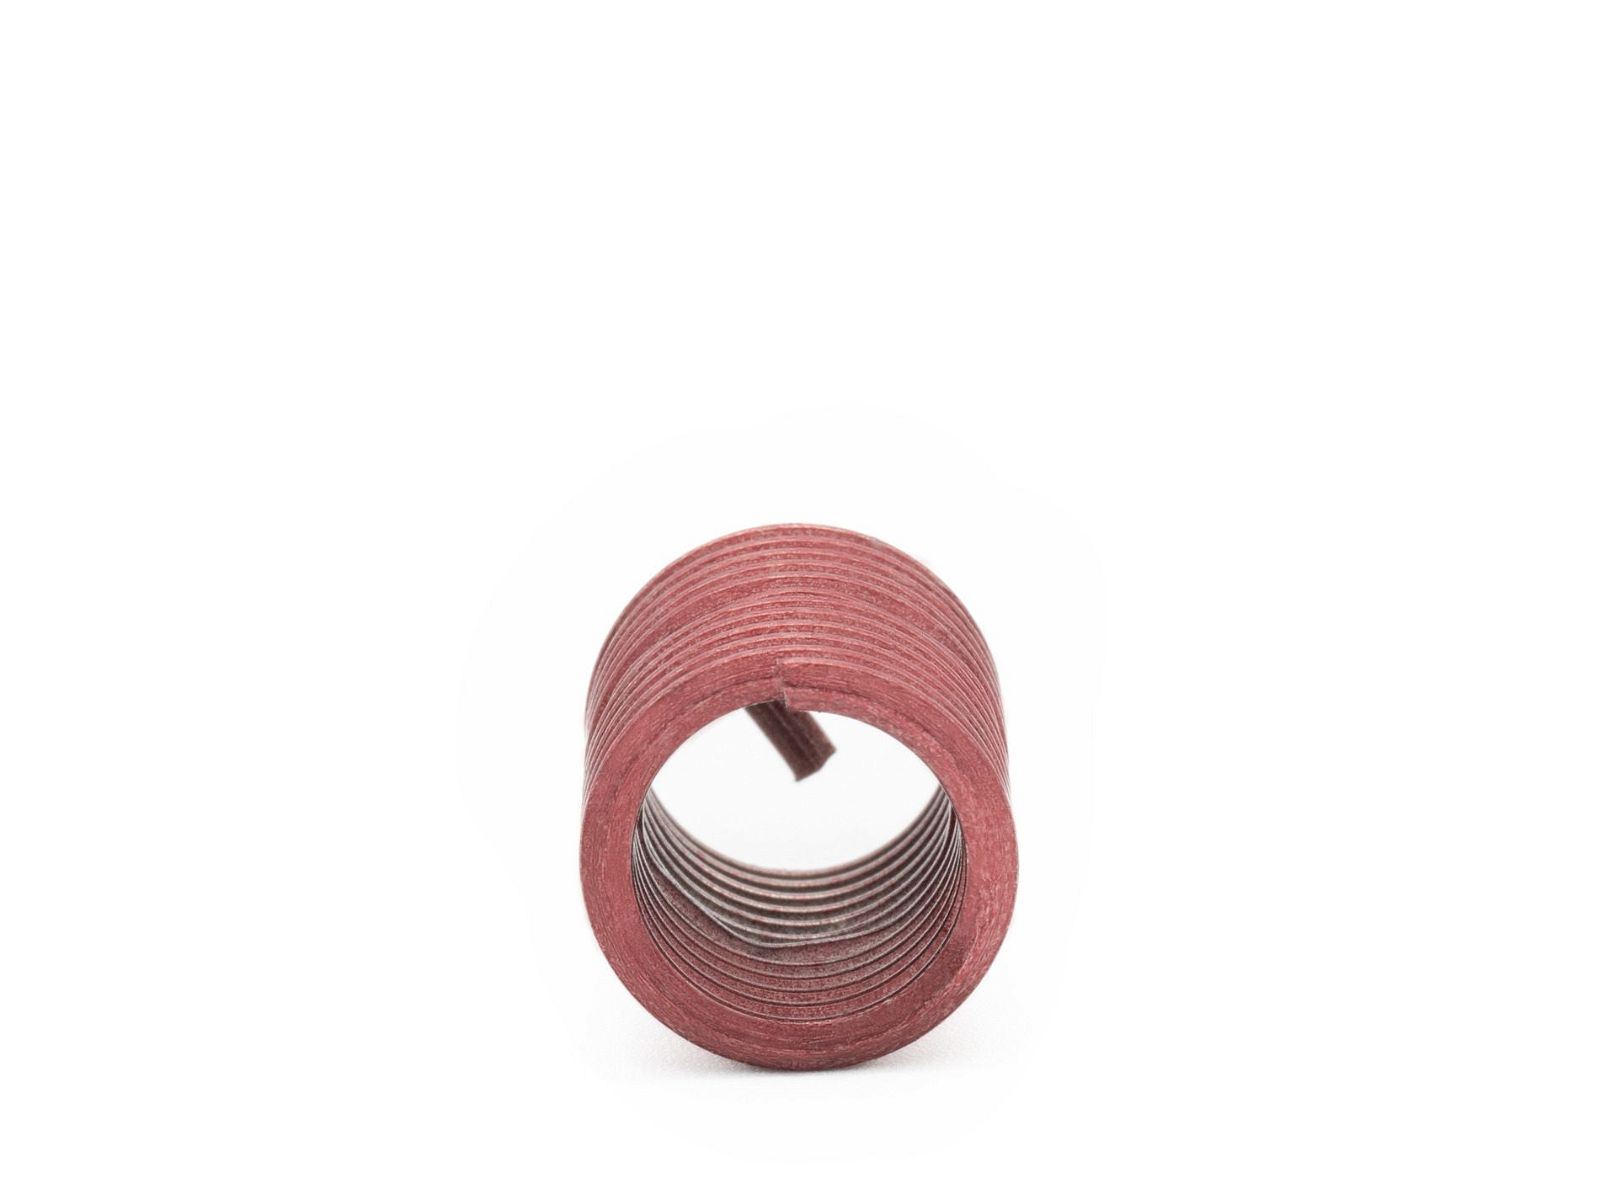 BaerCoil Wire Thread Inserts UNF No. 10 x 32 - 2.0 D (9.65 mm) - screw grip (screw locking) - 100 pcs.